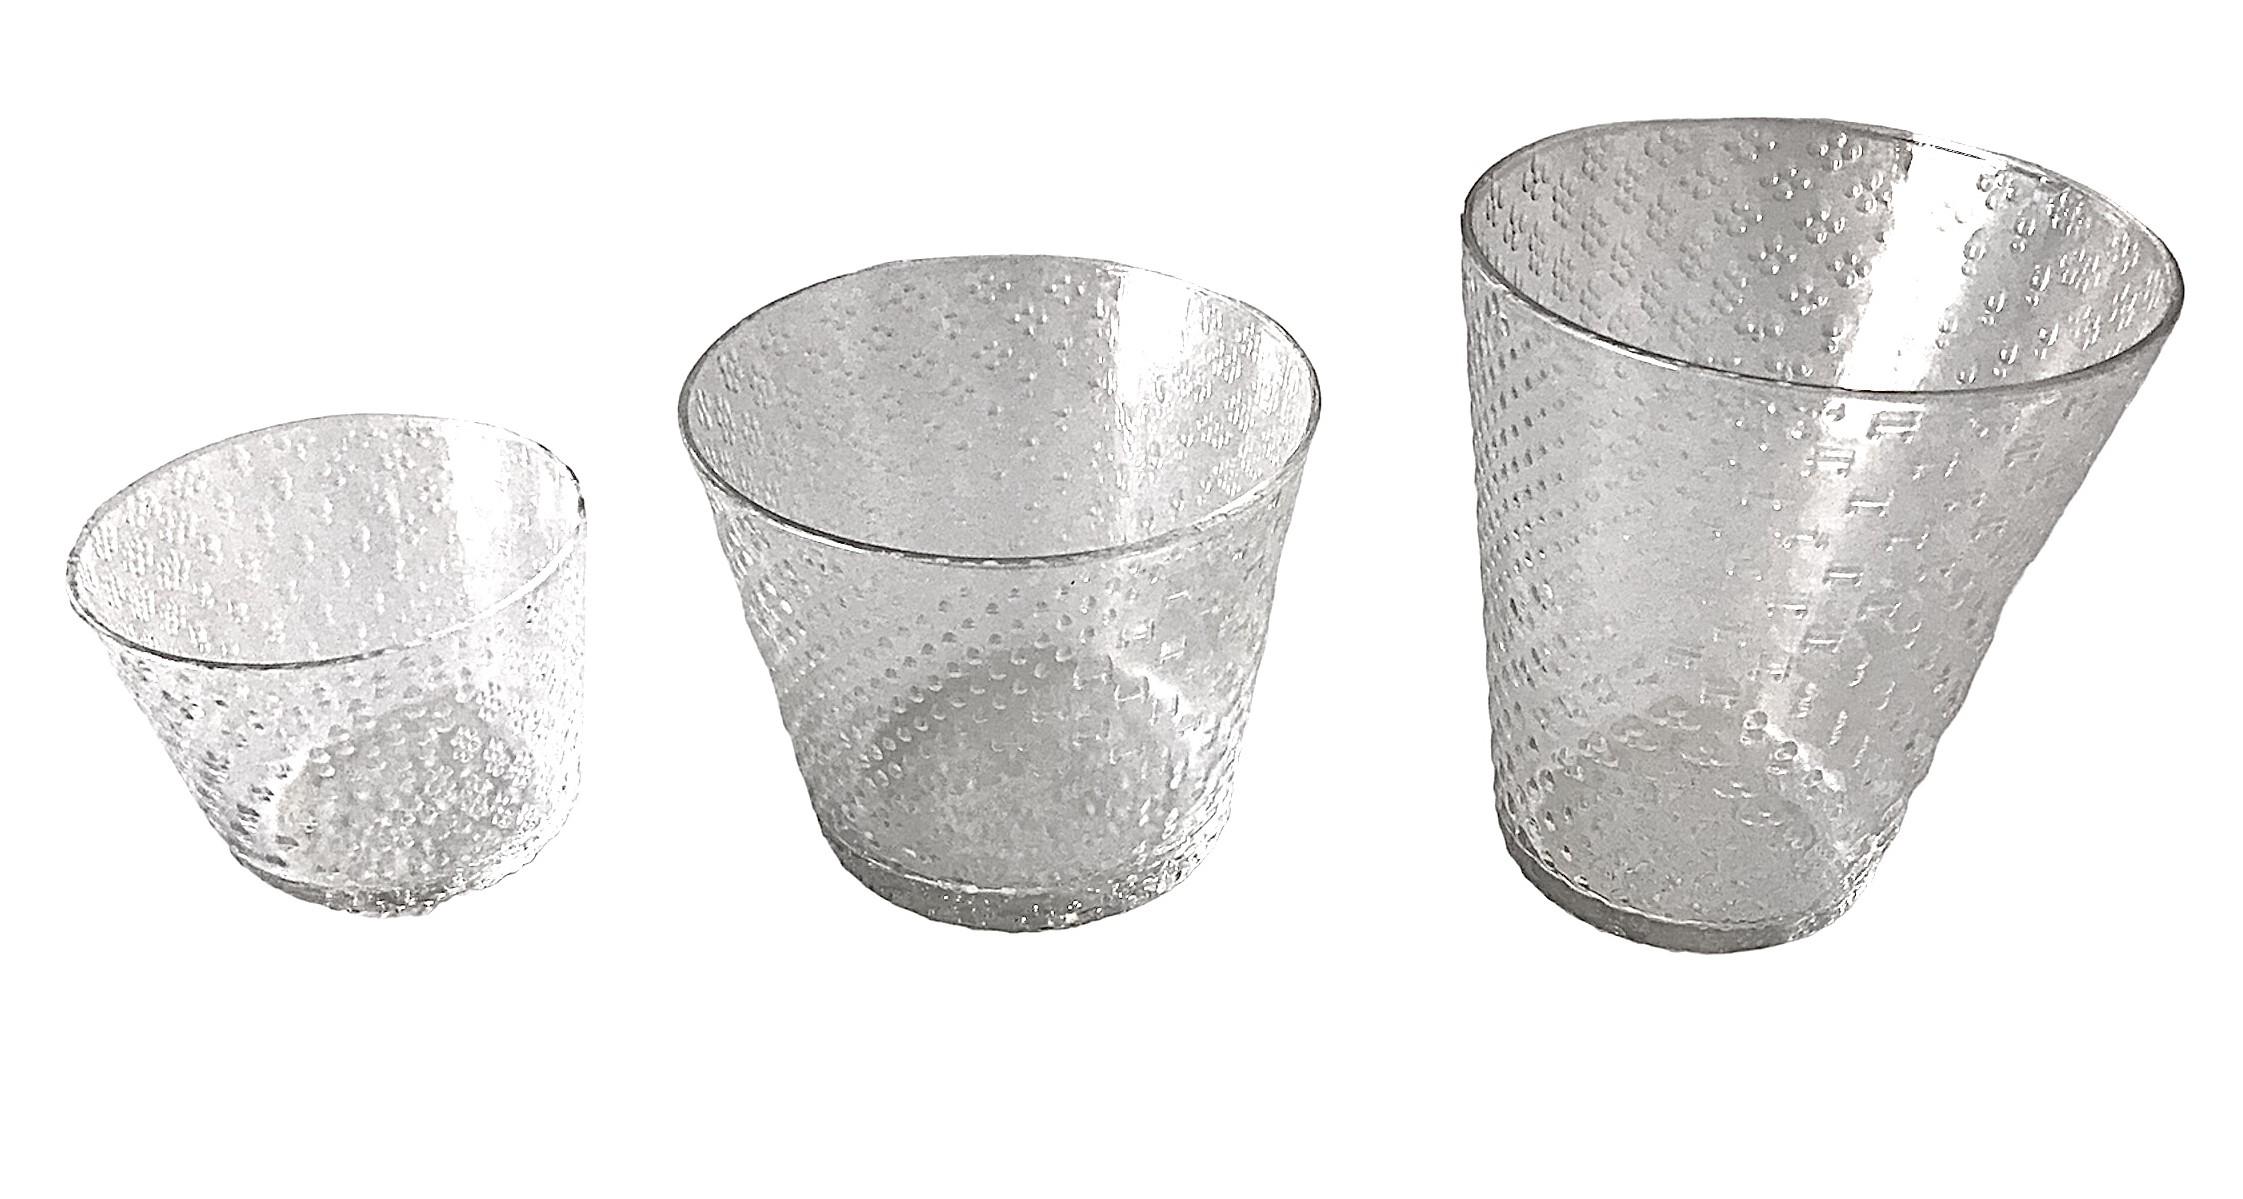 Modernes finnisches Design von Oiva Toikka aus dem Jahr 1970, Tundra-Glaswaren für Arabia, Finnland.    Das Design besteht aus mehreren einzigartigen kleinen Mustern, die von  die arktische Tundra.  Kollektion aus strukturiertem Klarglas, inspiriert